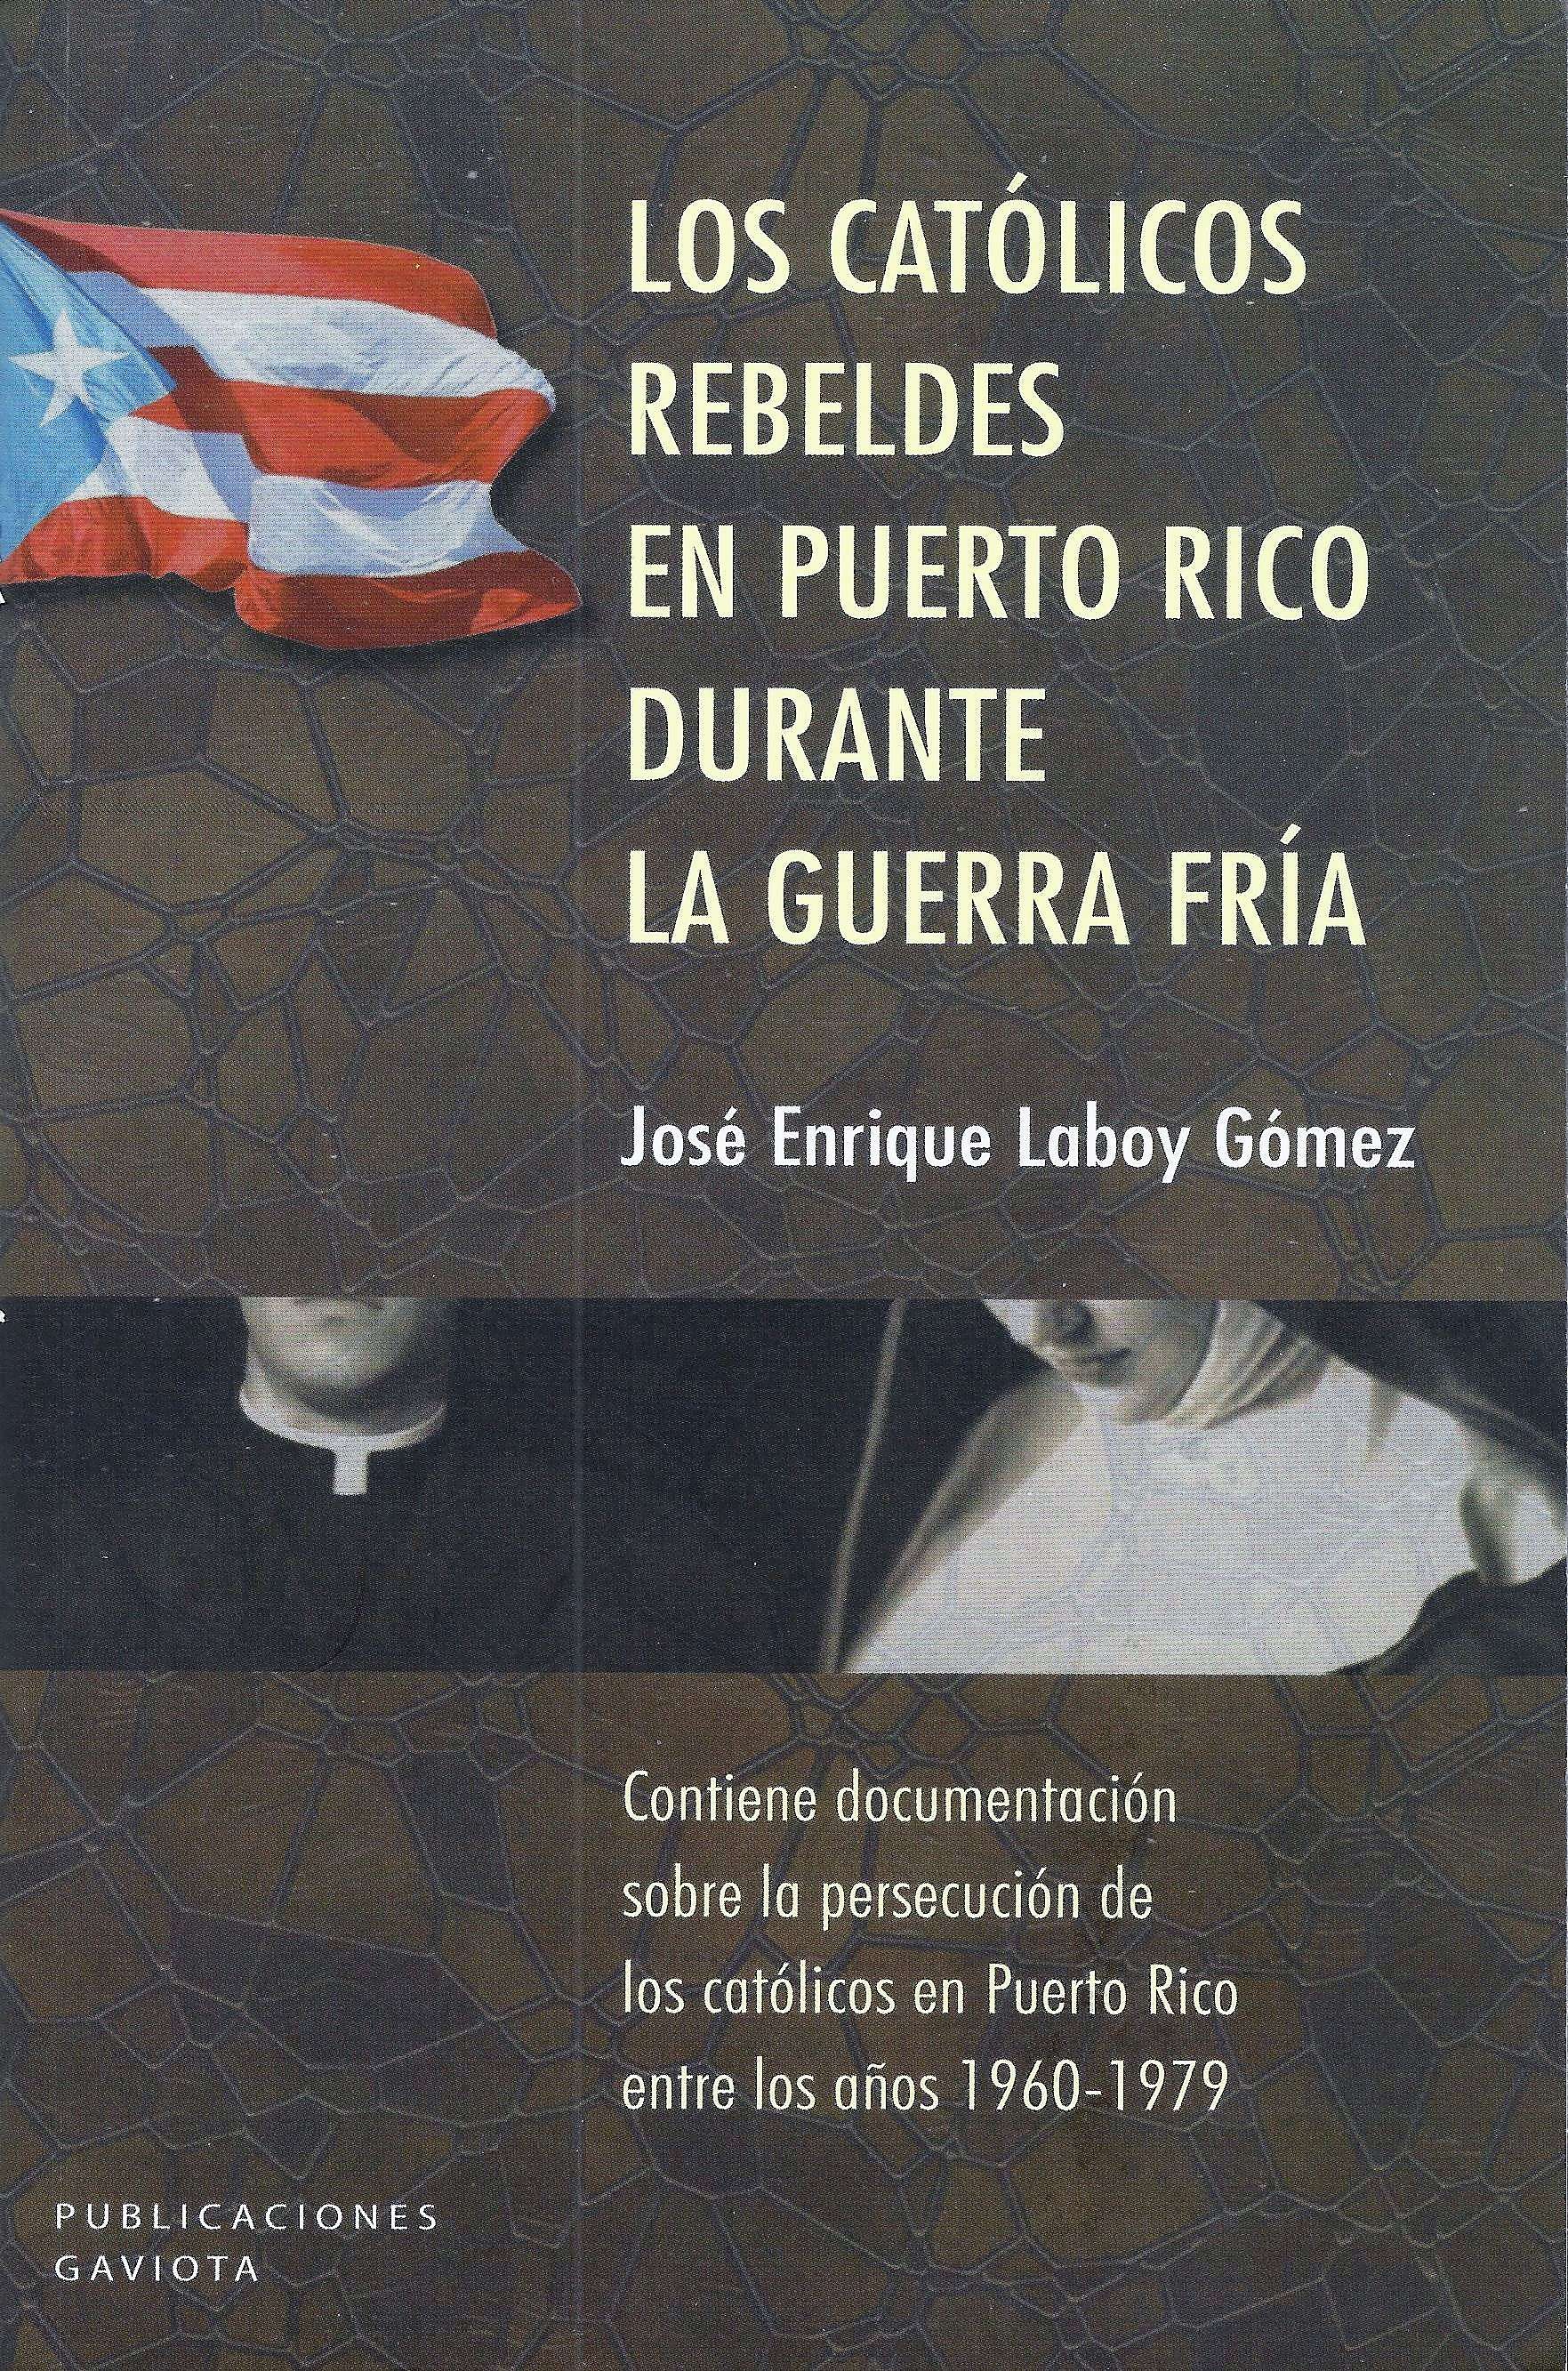 Libro - Los Católicos Rebeldes en Puerto Rico - Mayo 2017